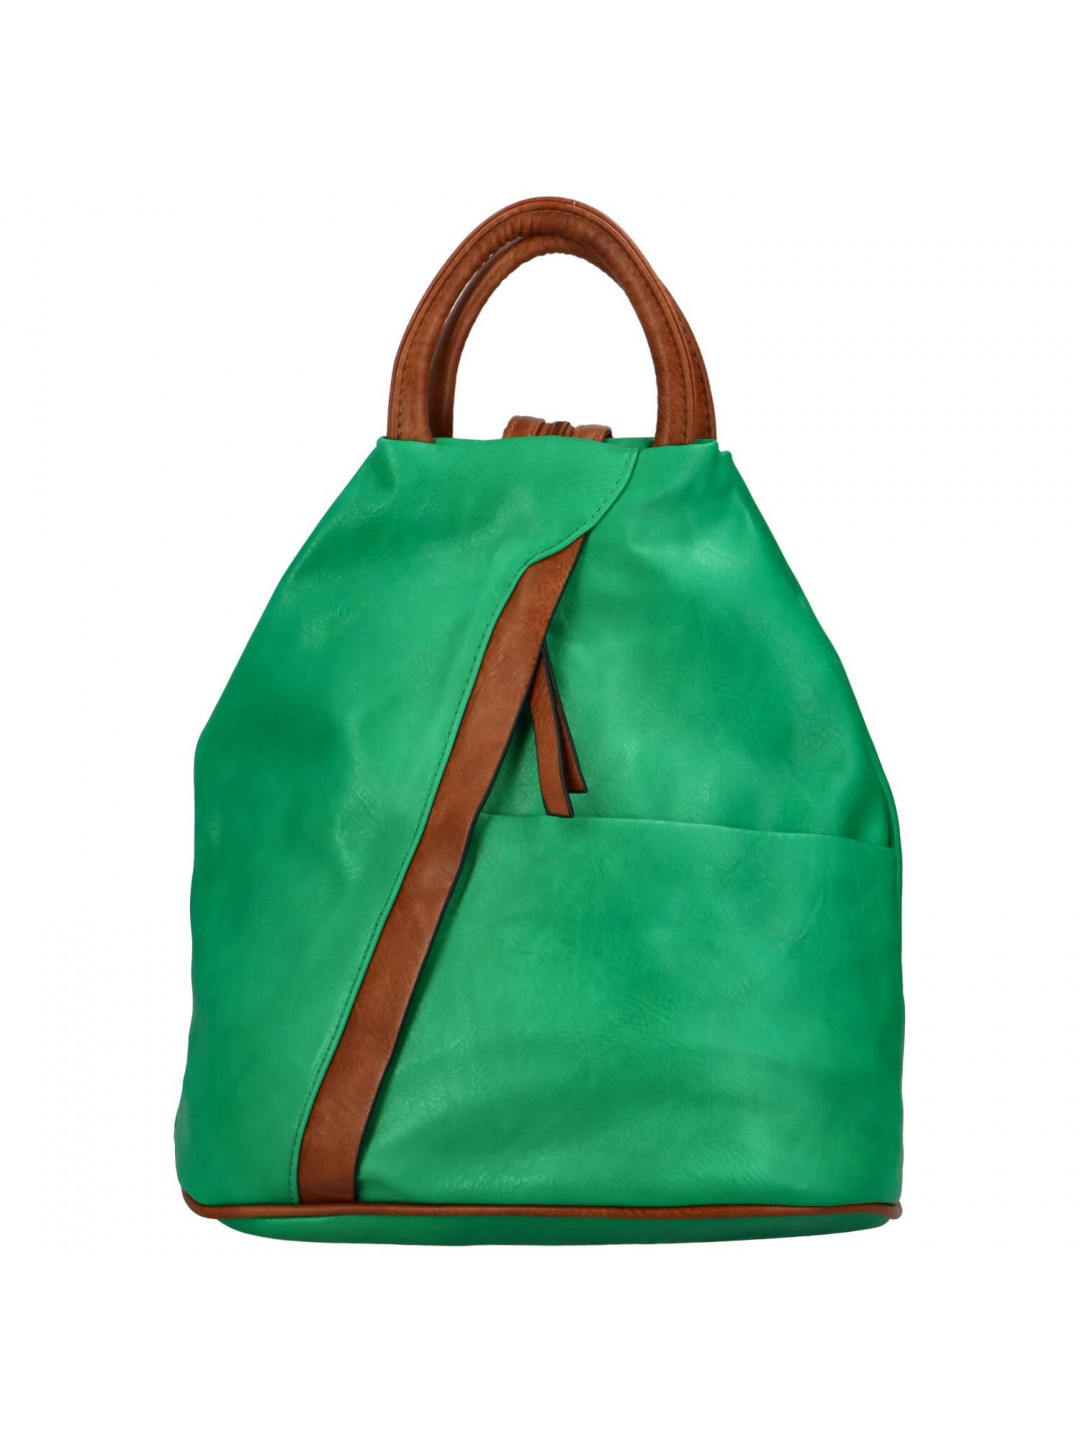 Dámský koženkový batůžek s asymetrickými kapsami Novala zelená